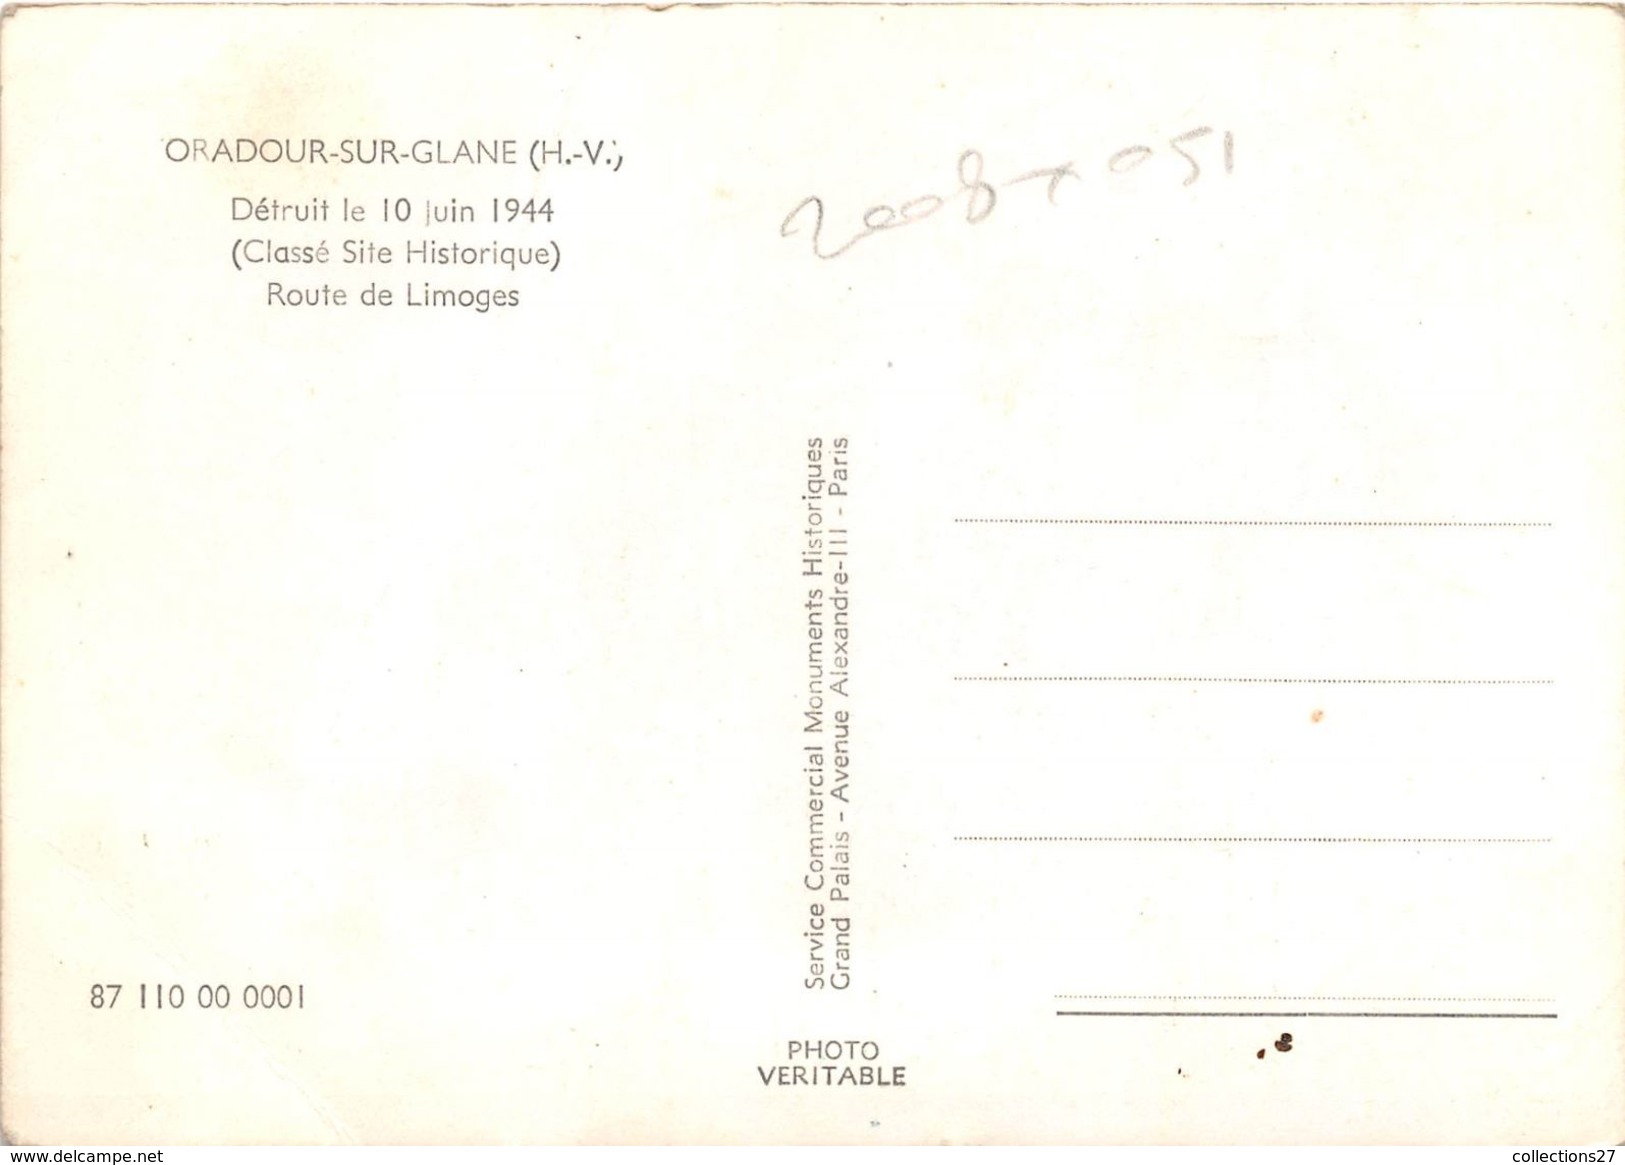 87-ORADOUR-SUR-GLANE- DETRUIT LE 10 JUIN 1944, ROUTE DE LIMOGE, ( CLASSE SITE HISTORIQUE ) - Oradour Sur Glane